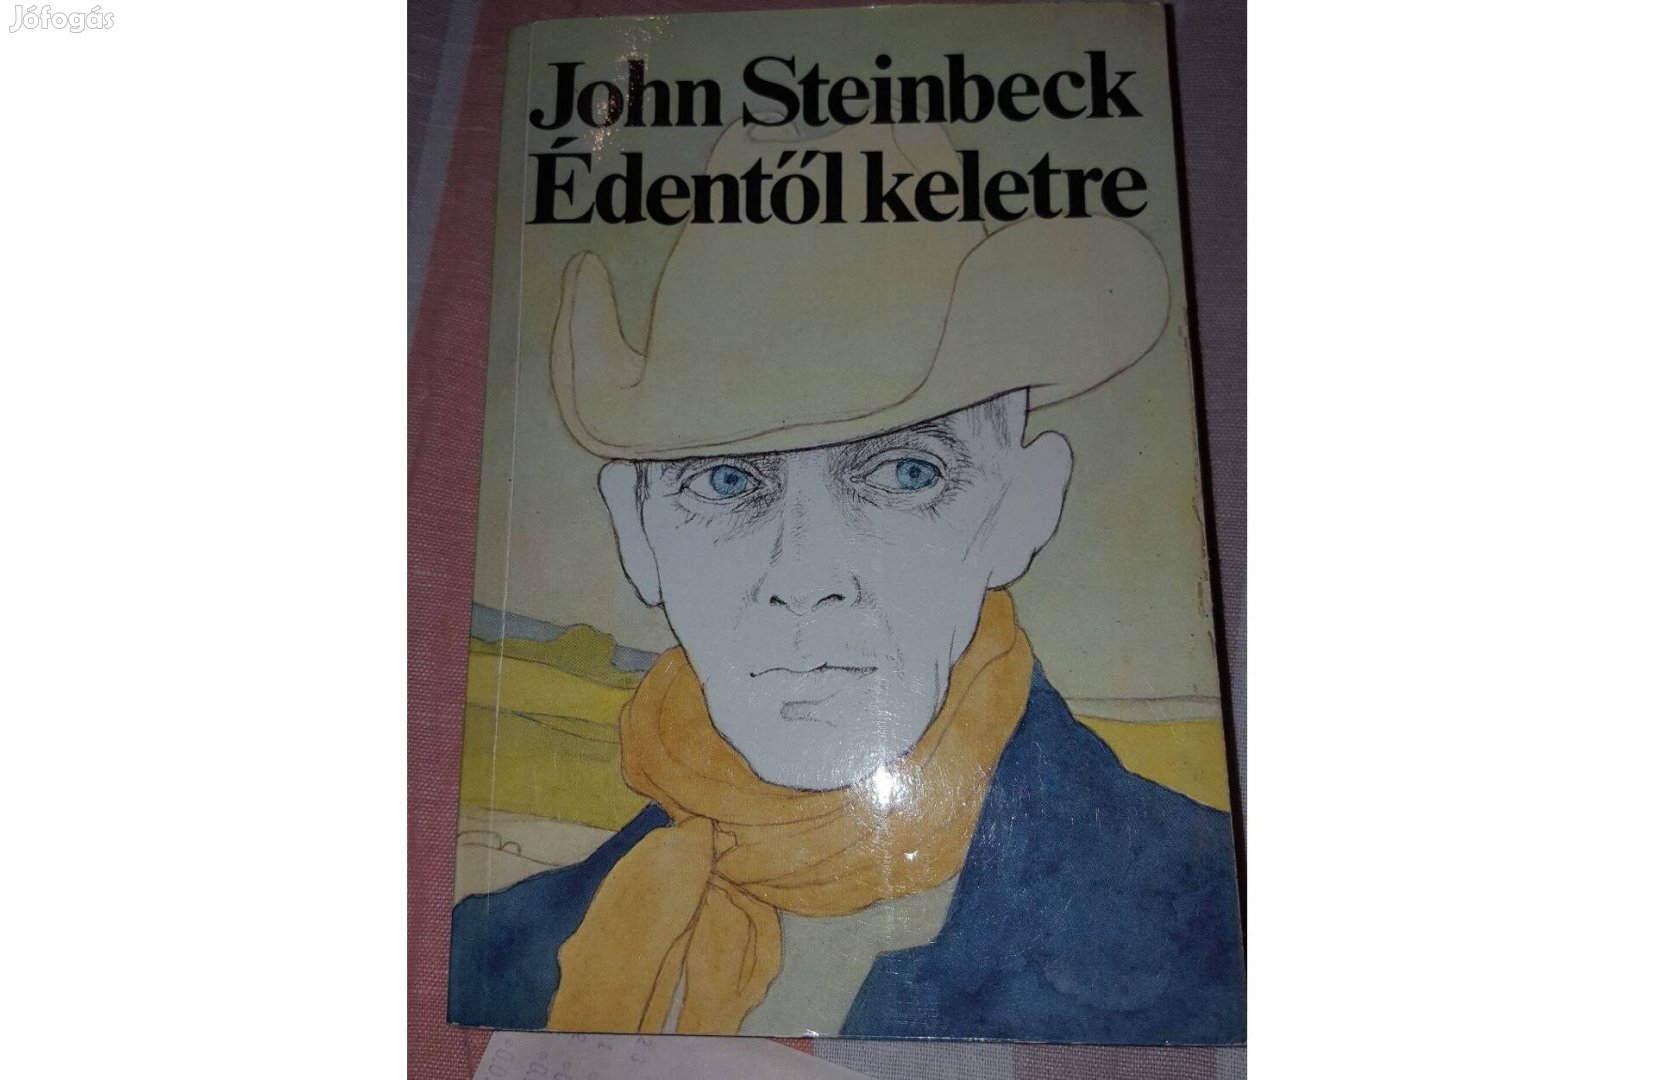 Könyvcsomag - John Steinbeck könyvek